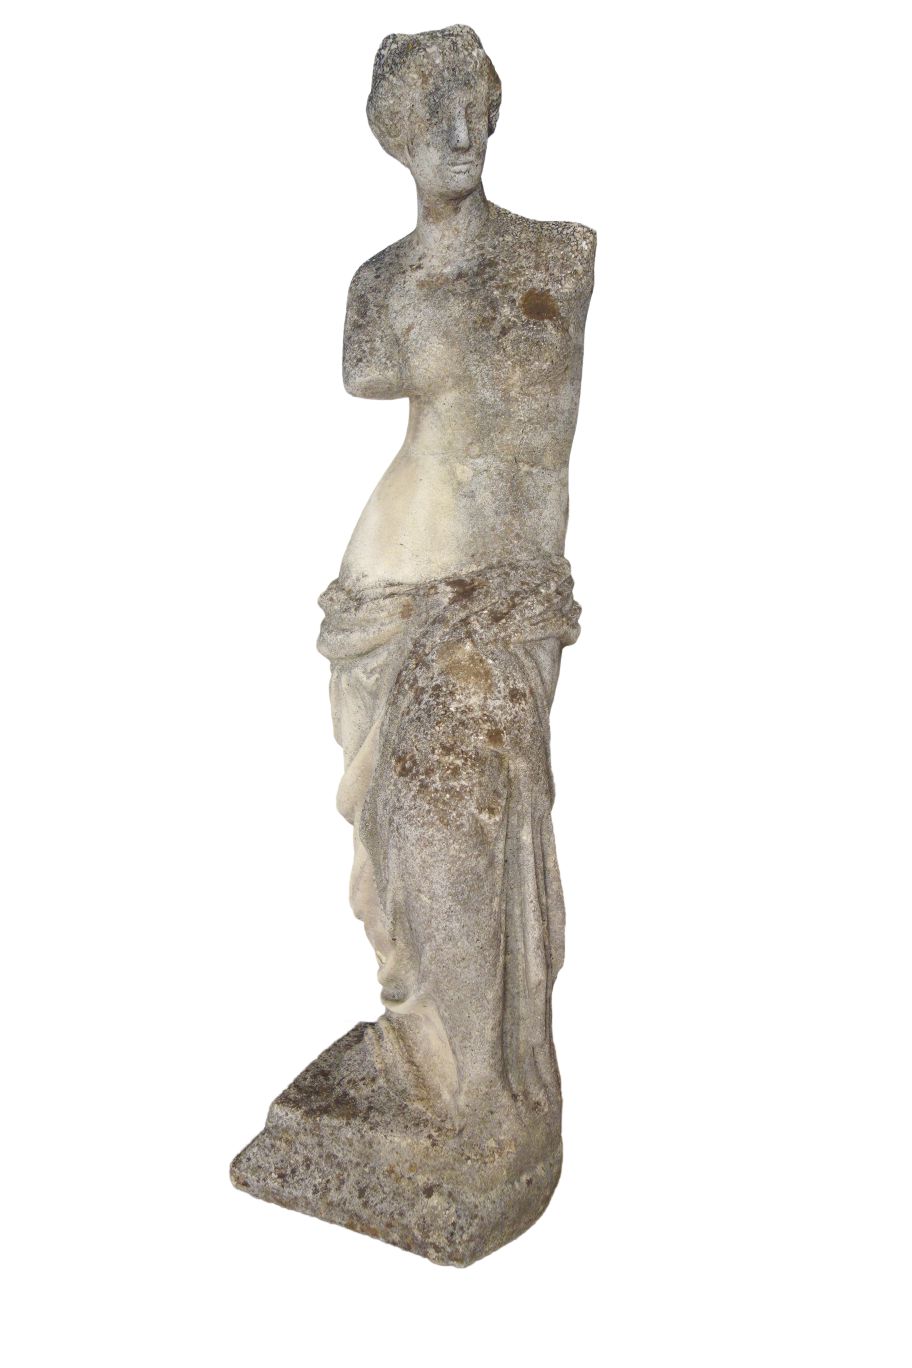 Antique Italian Classic Venus de Milo Sculpture from Lake Como — Bellini's  Antique Italia